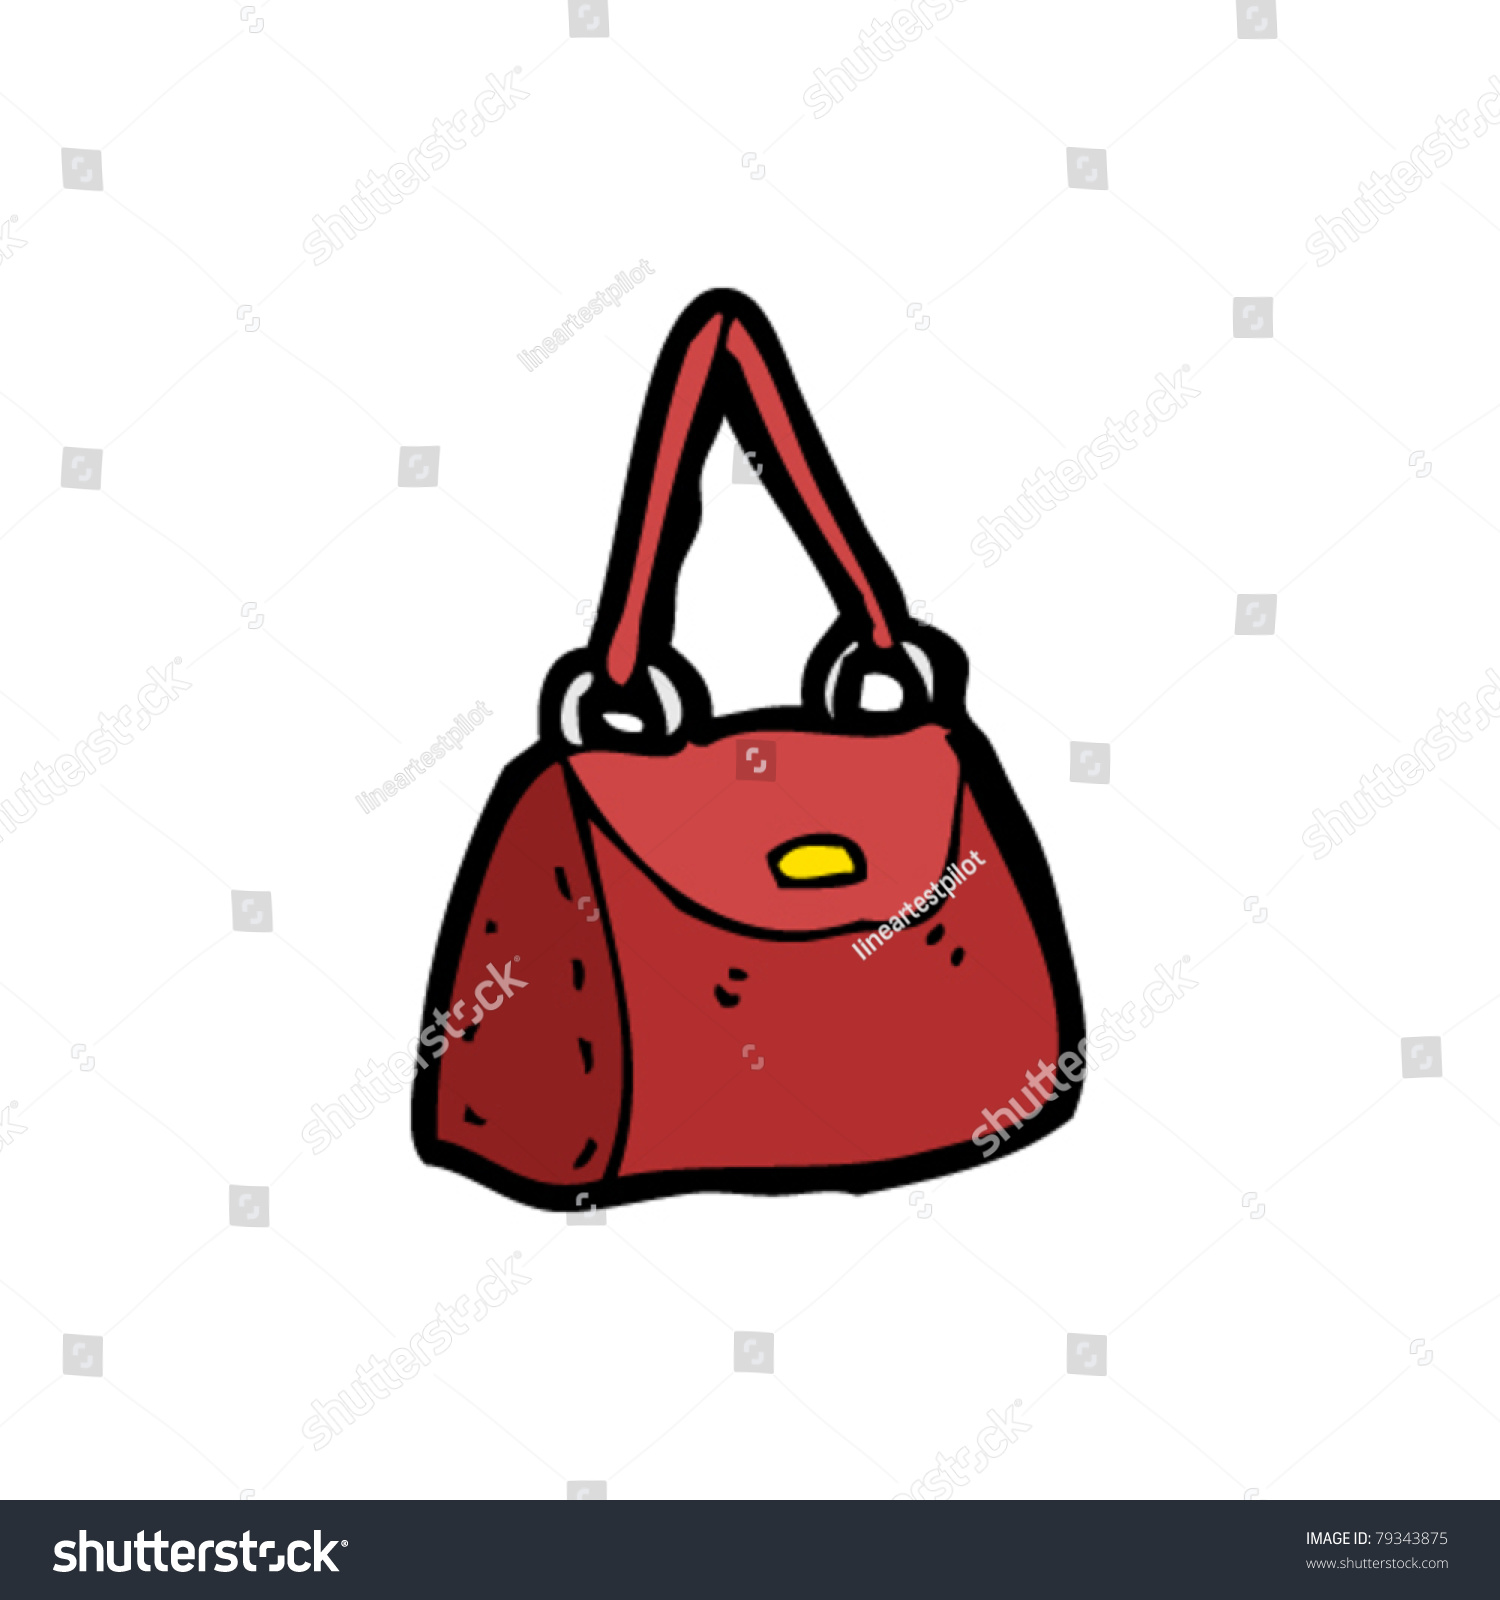 Handbag Cartoon Stock Vector Illustration 79343875 : Shutterstock